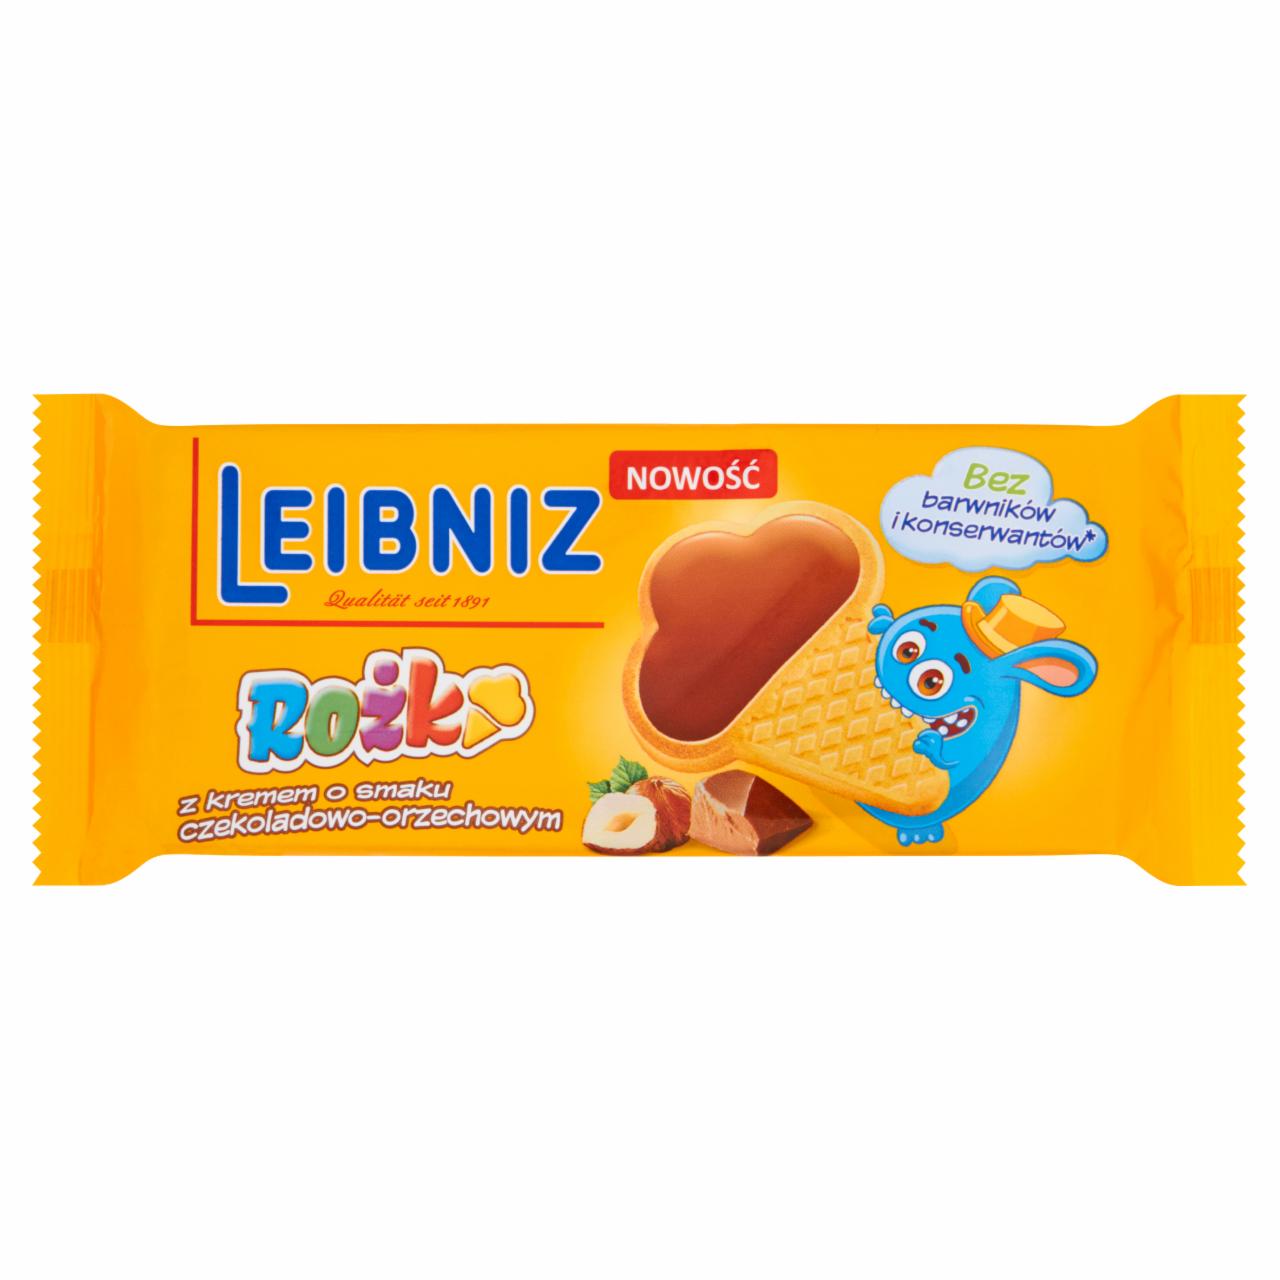 Zdjęcia - Leibniz Rożki z kremem o smaku czekoladowo-orzechowym 100 g